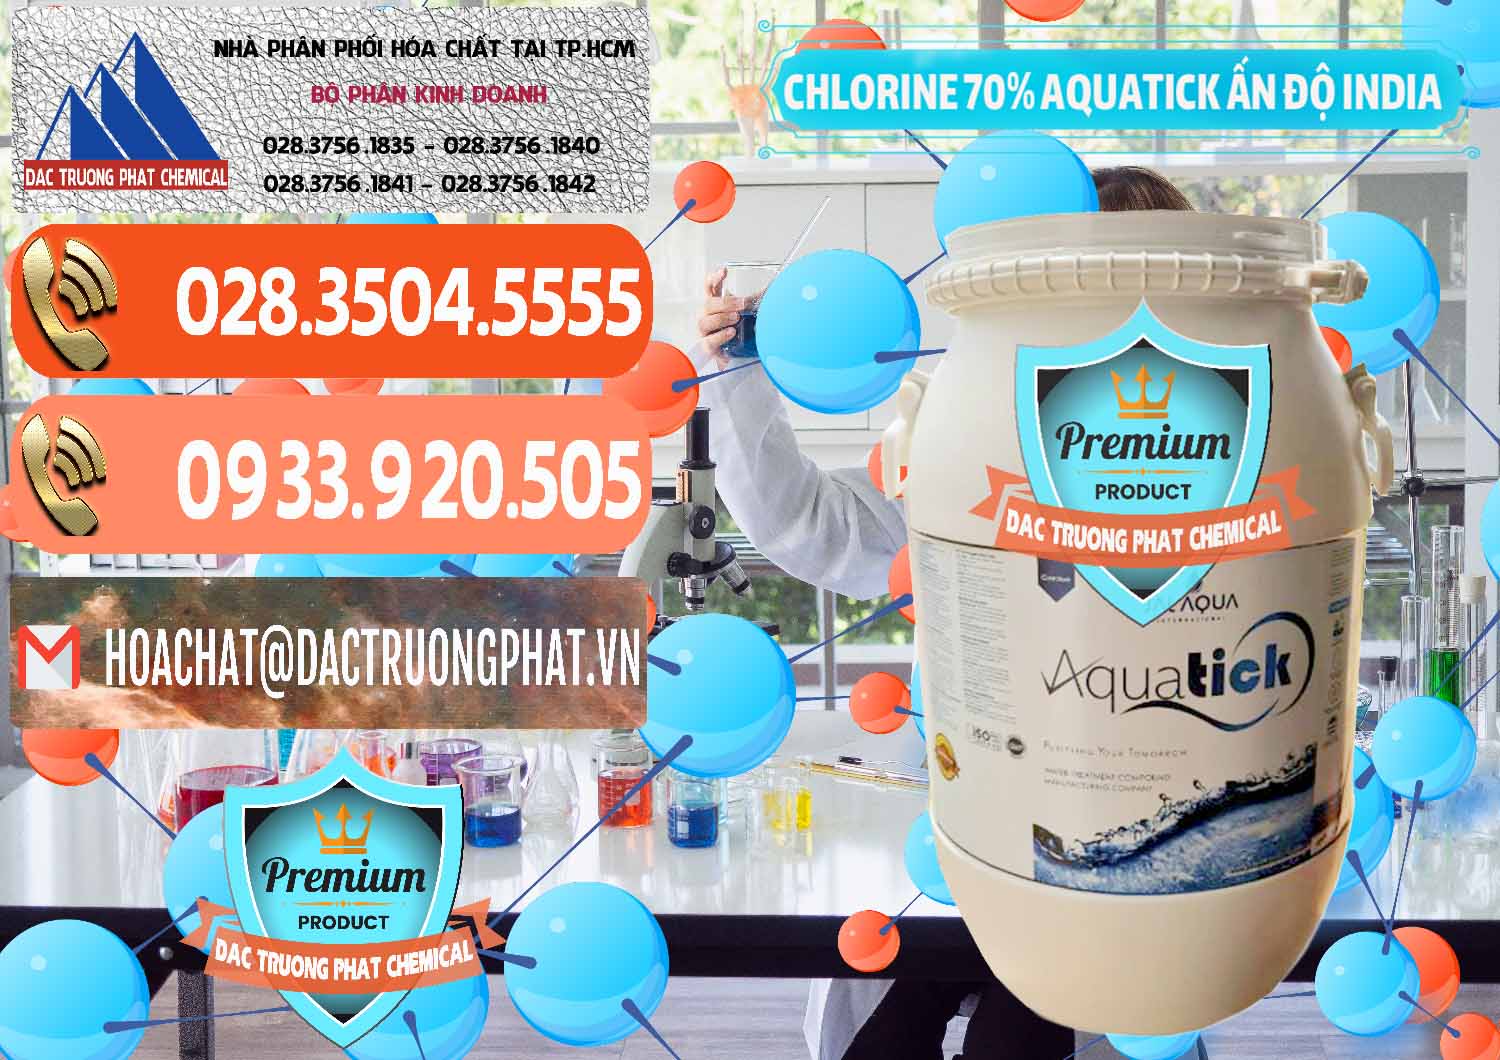 Nơi chuyên cung cấp & bán Chlorine – Clorin 70% Aquatick Jal Aqua Ấn Độ India - 0215 - Cty cung cấp và phân phối hóa chất tại TP.HCM - hoachatmientay.com